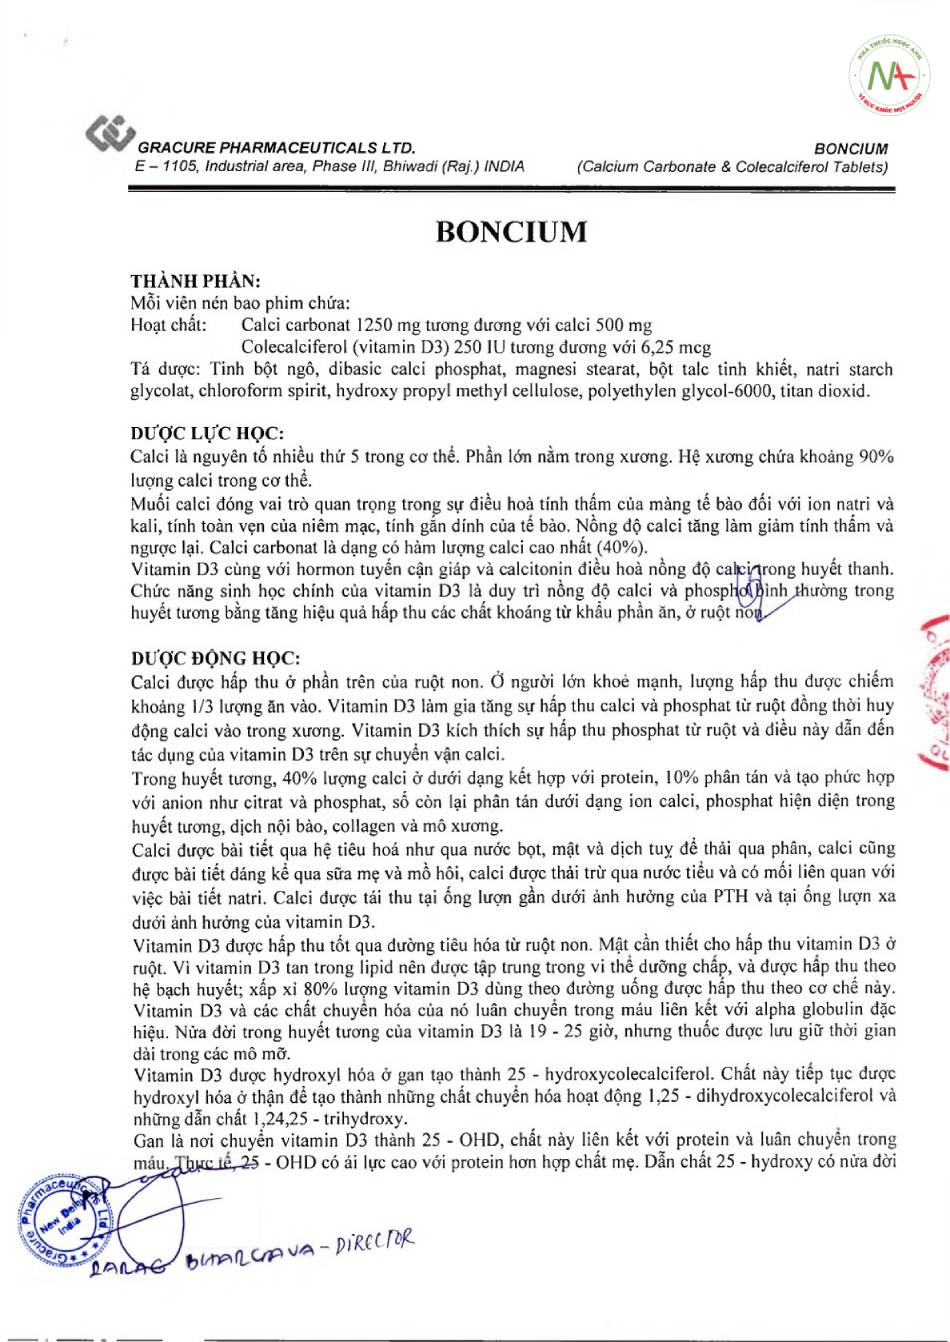 Hướng dẫn sử dụng thuốc Boncium